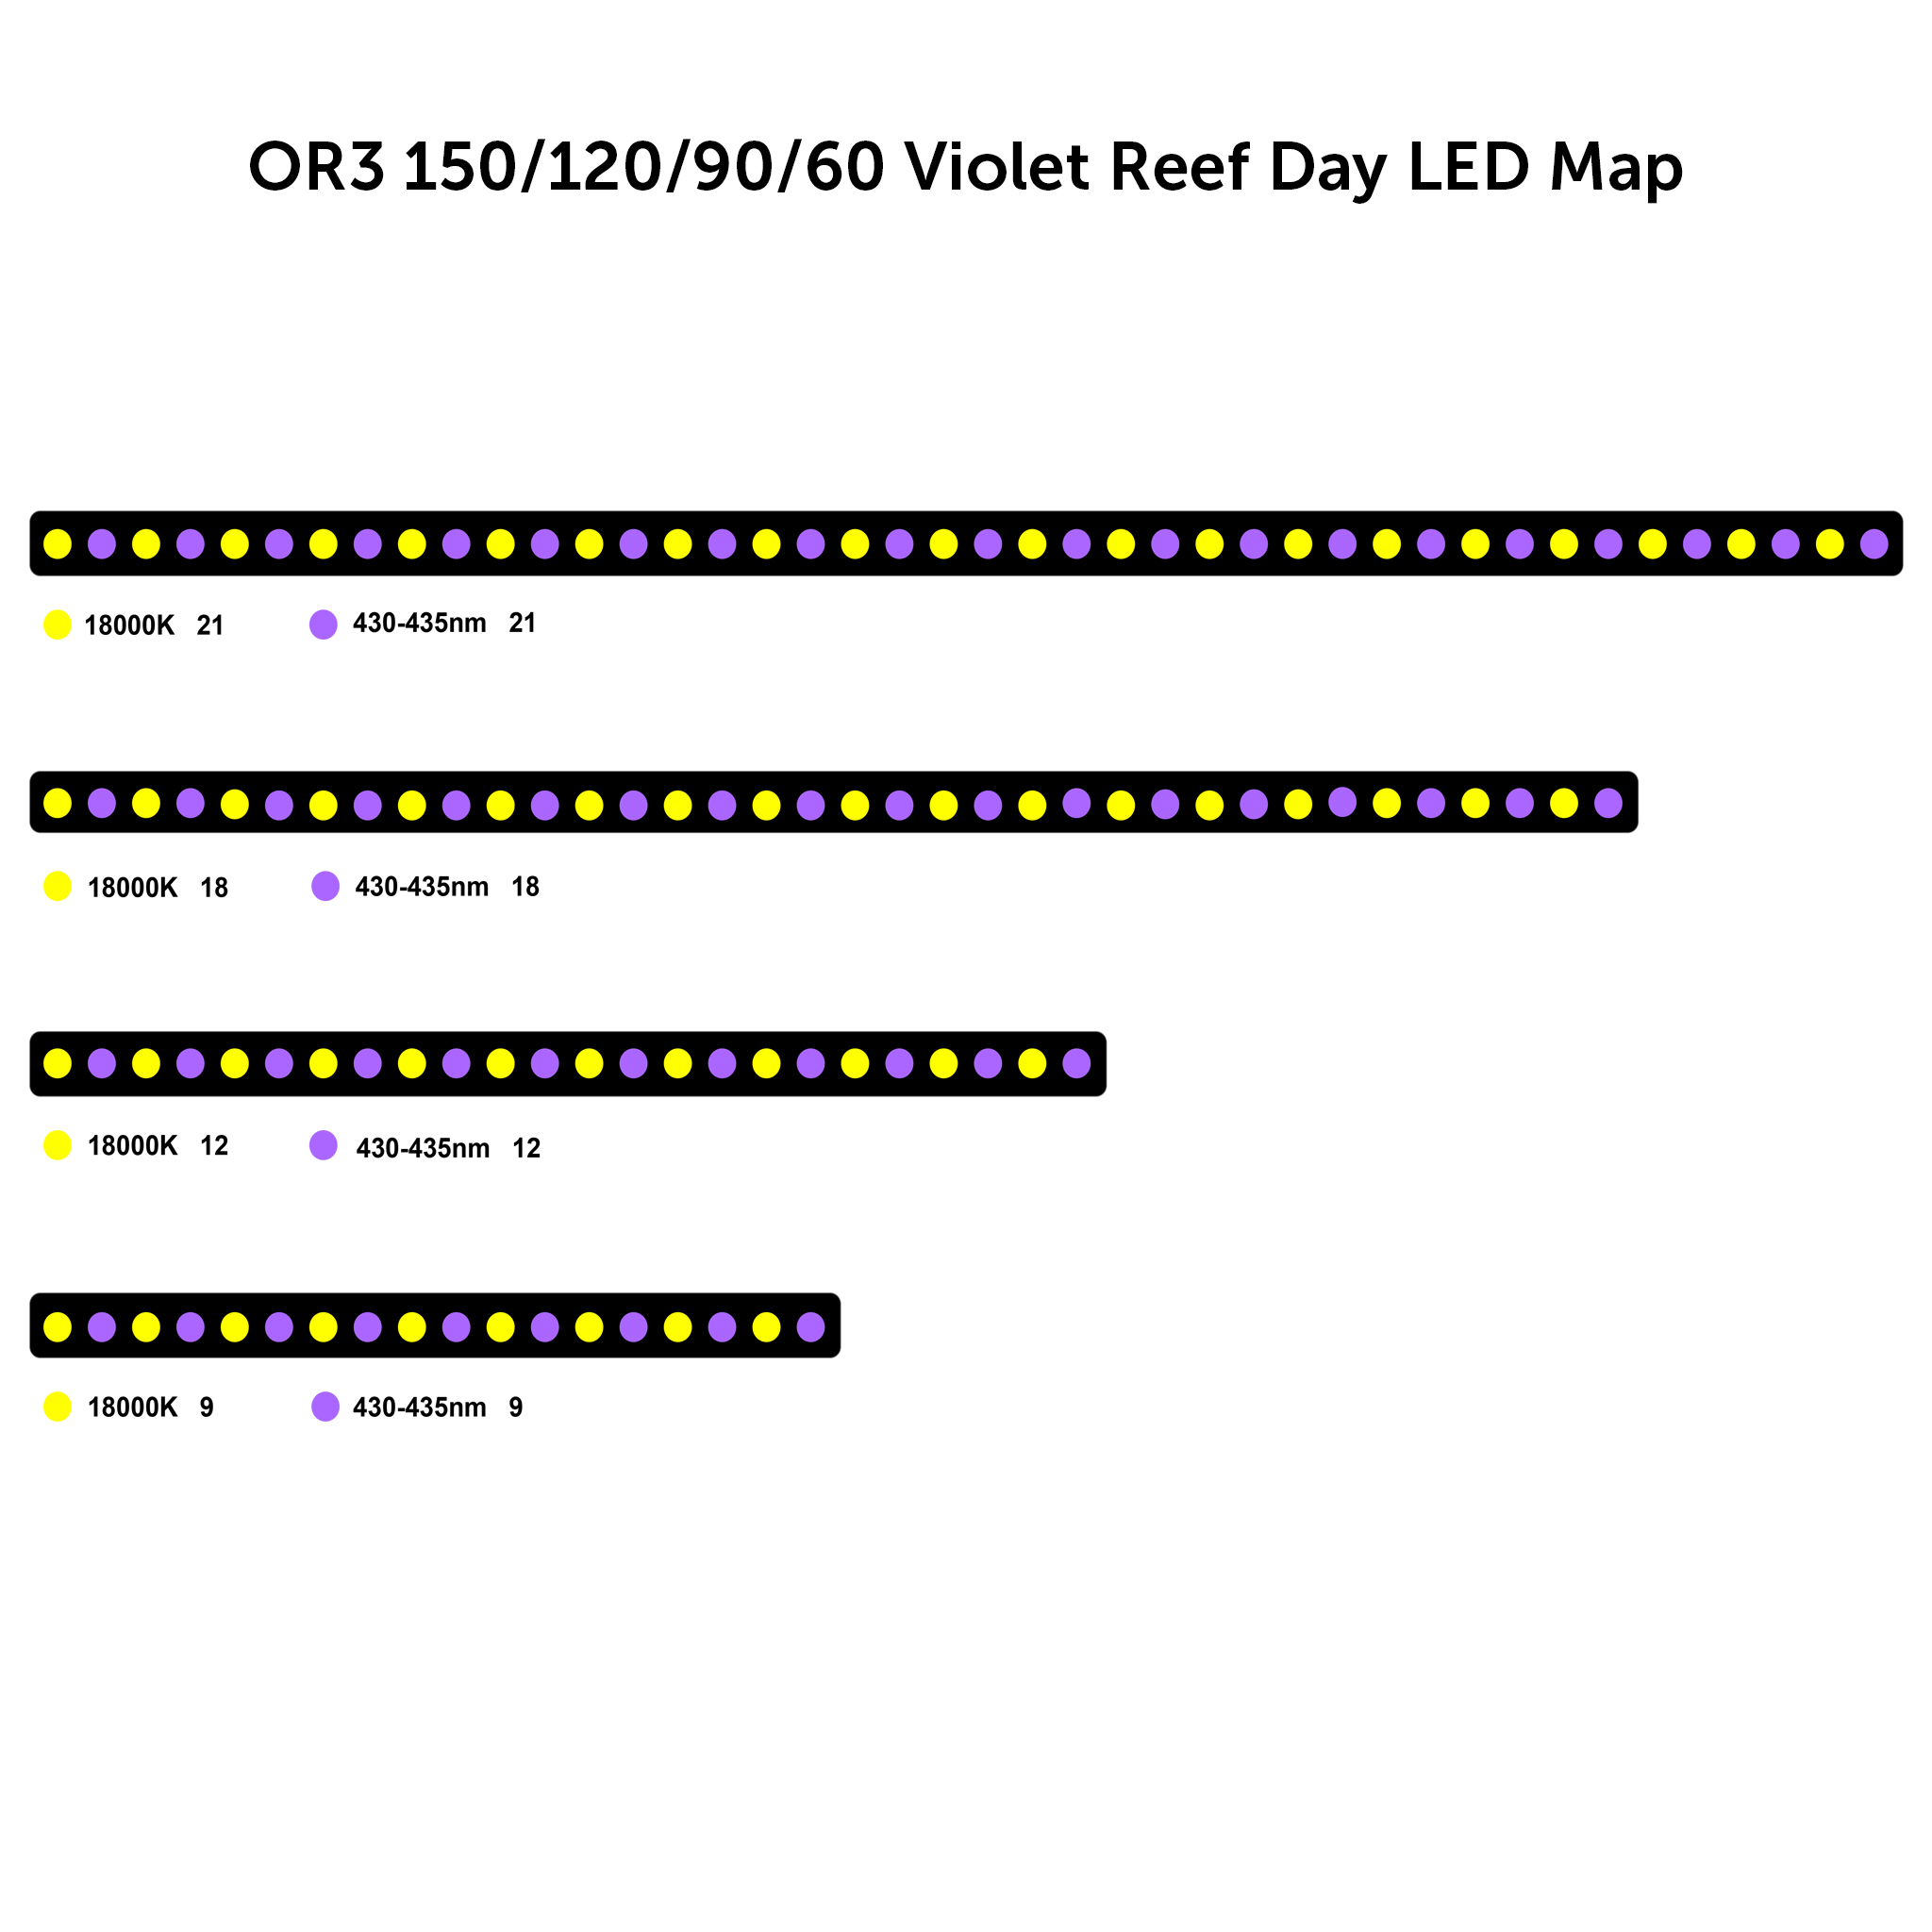 OR3 violetti riuttapäivän led-kartta